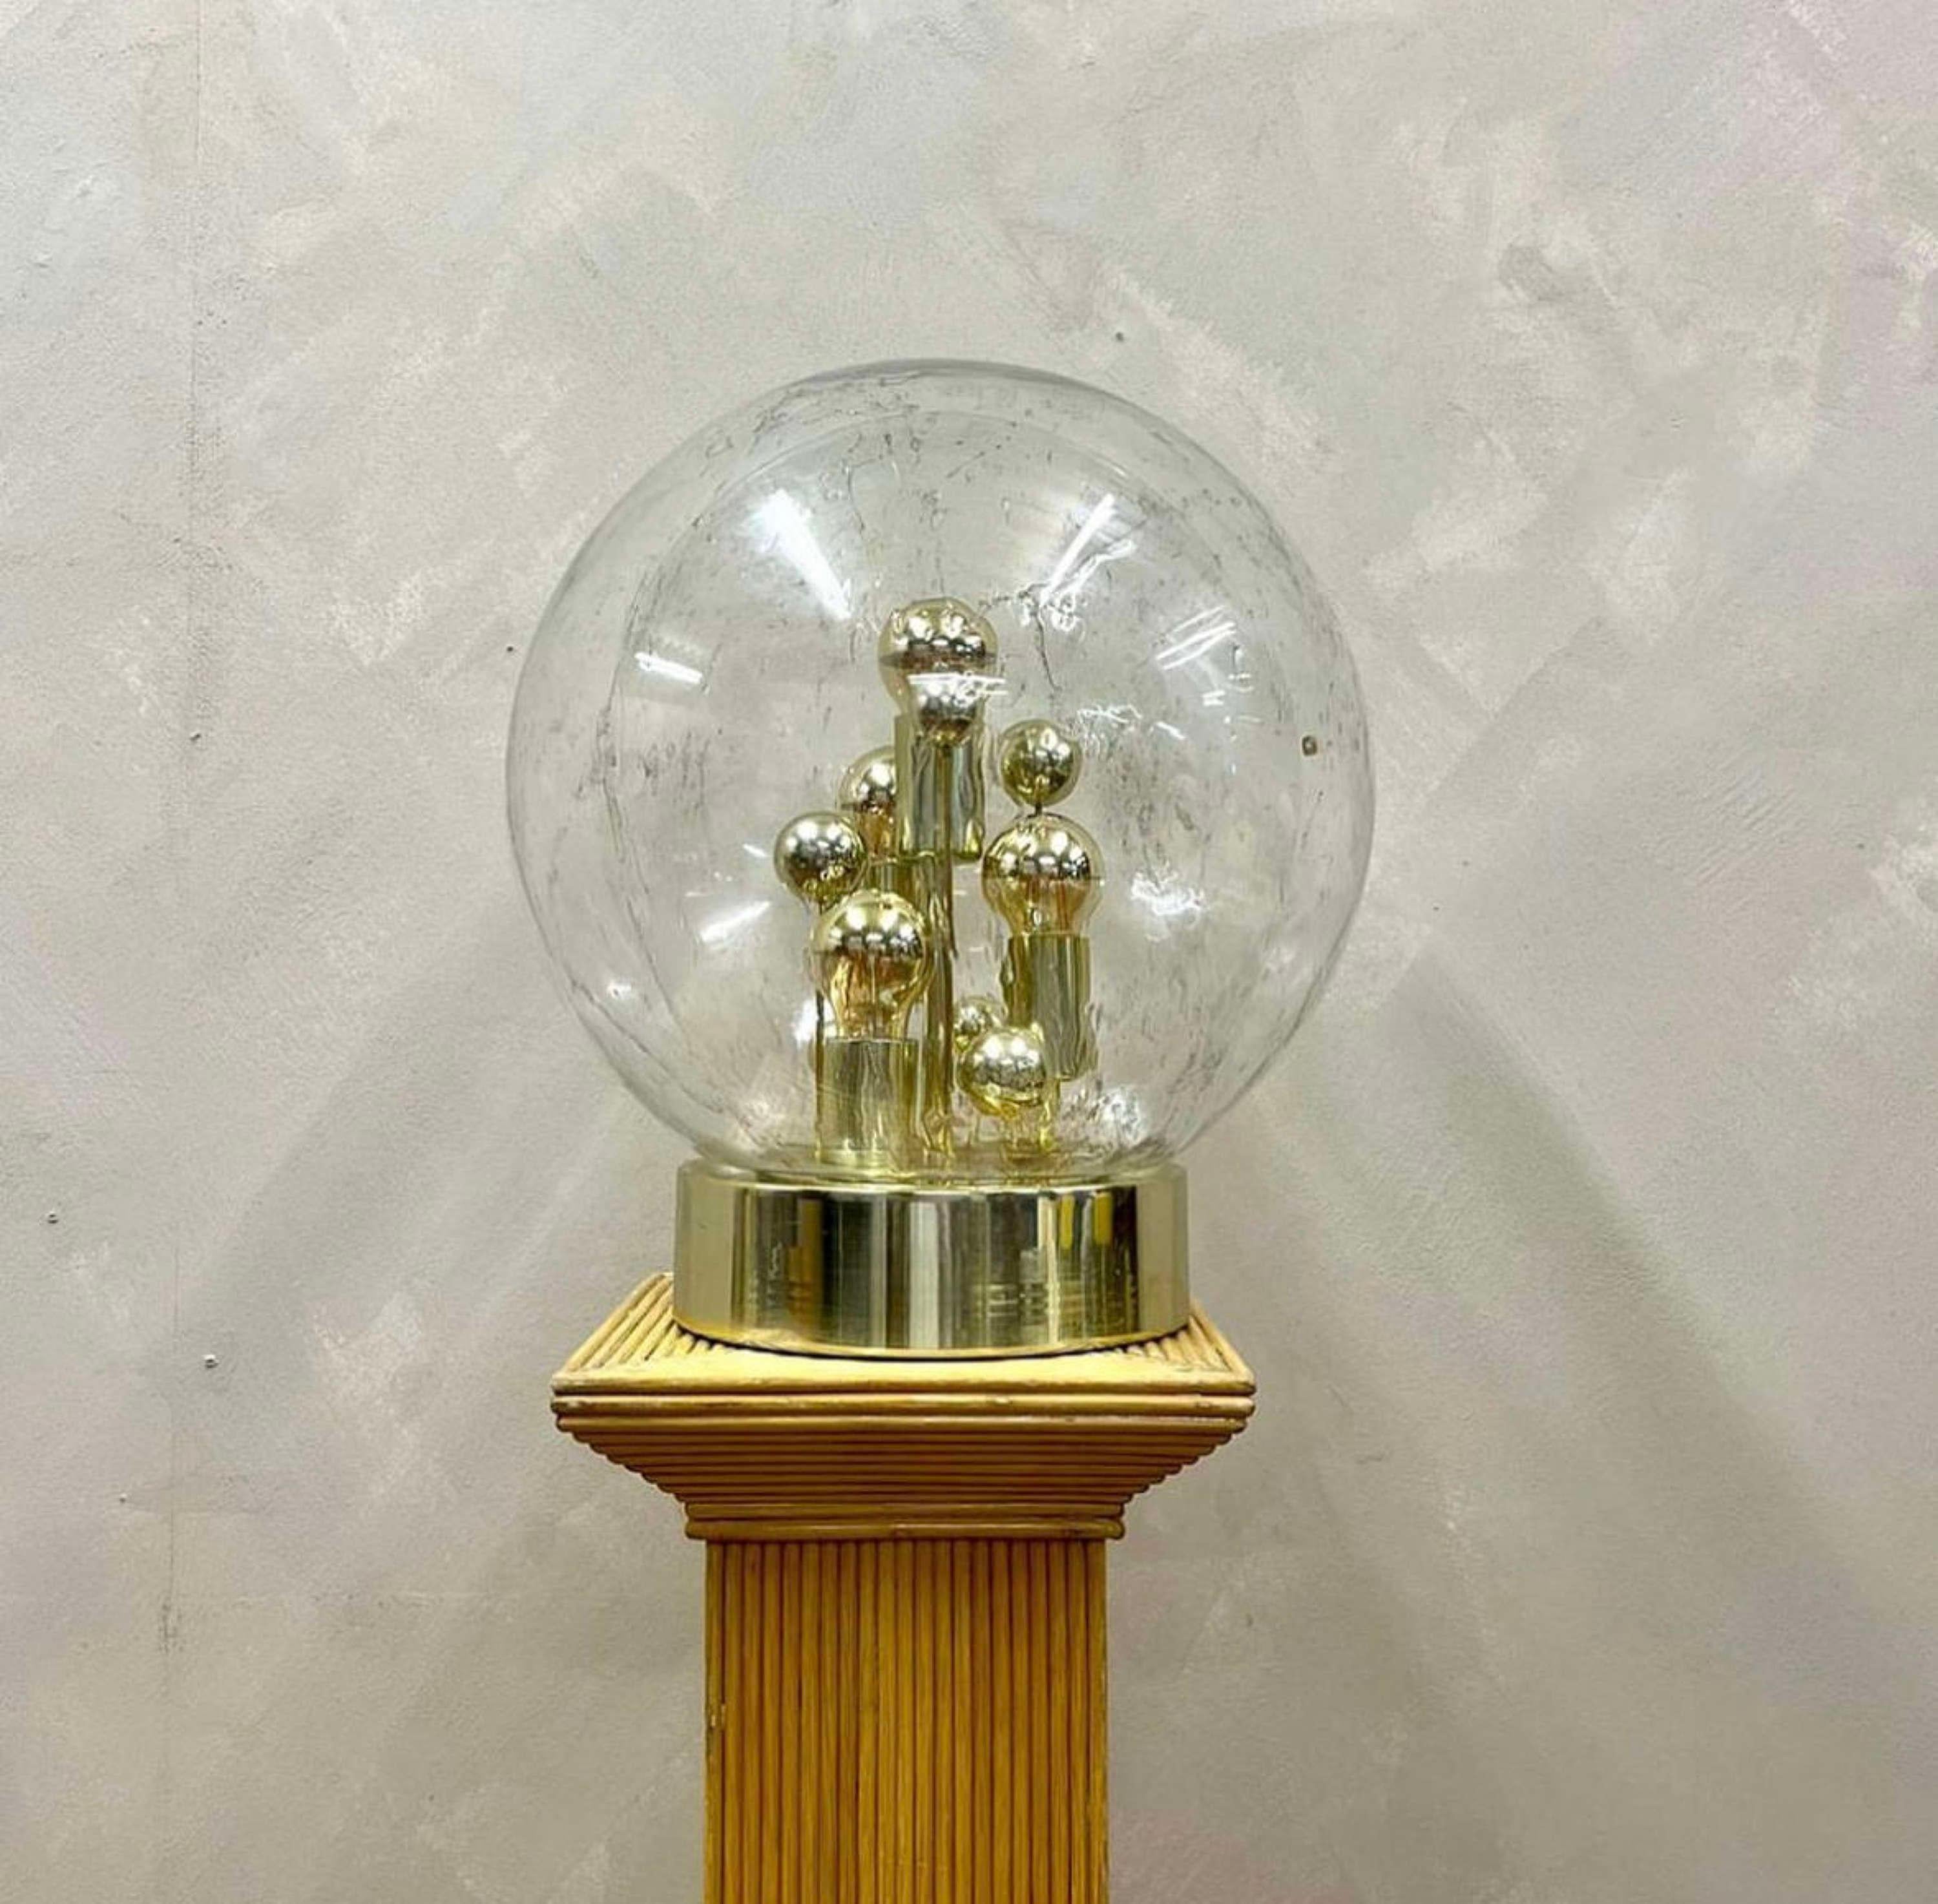 Une rare opportunité d'offrir cette lampe globe en verre soufflé à la main des années 1960, par le designer allemand Doria Leuchten, fondé en 1945.
Éclairé par des ampoules trempées dans l'or, ce superbe centre de table émet une lueur magnifique et